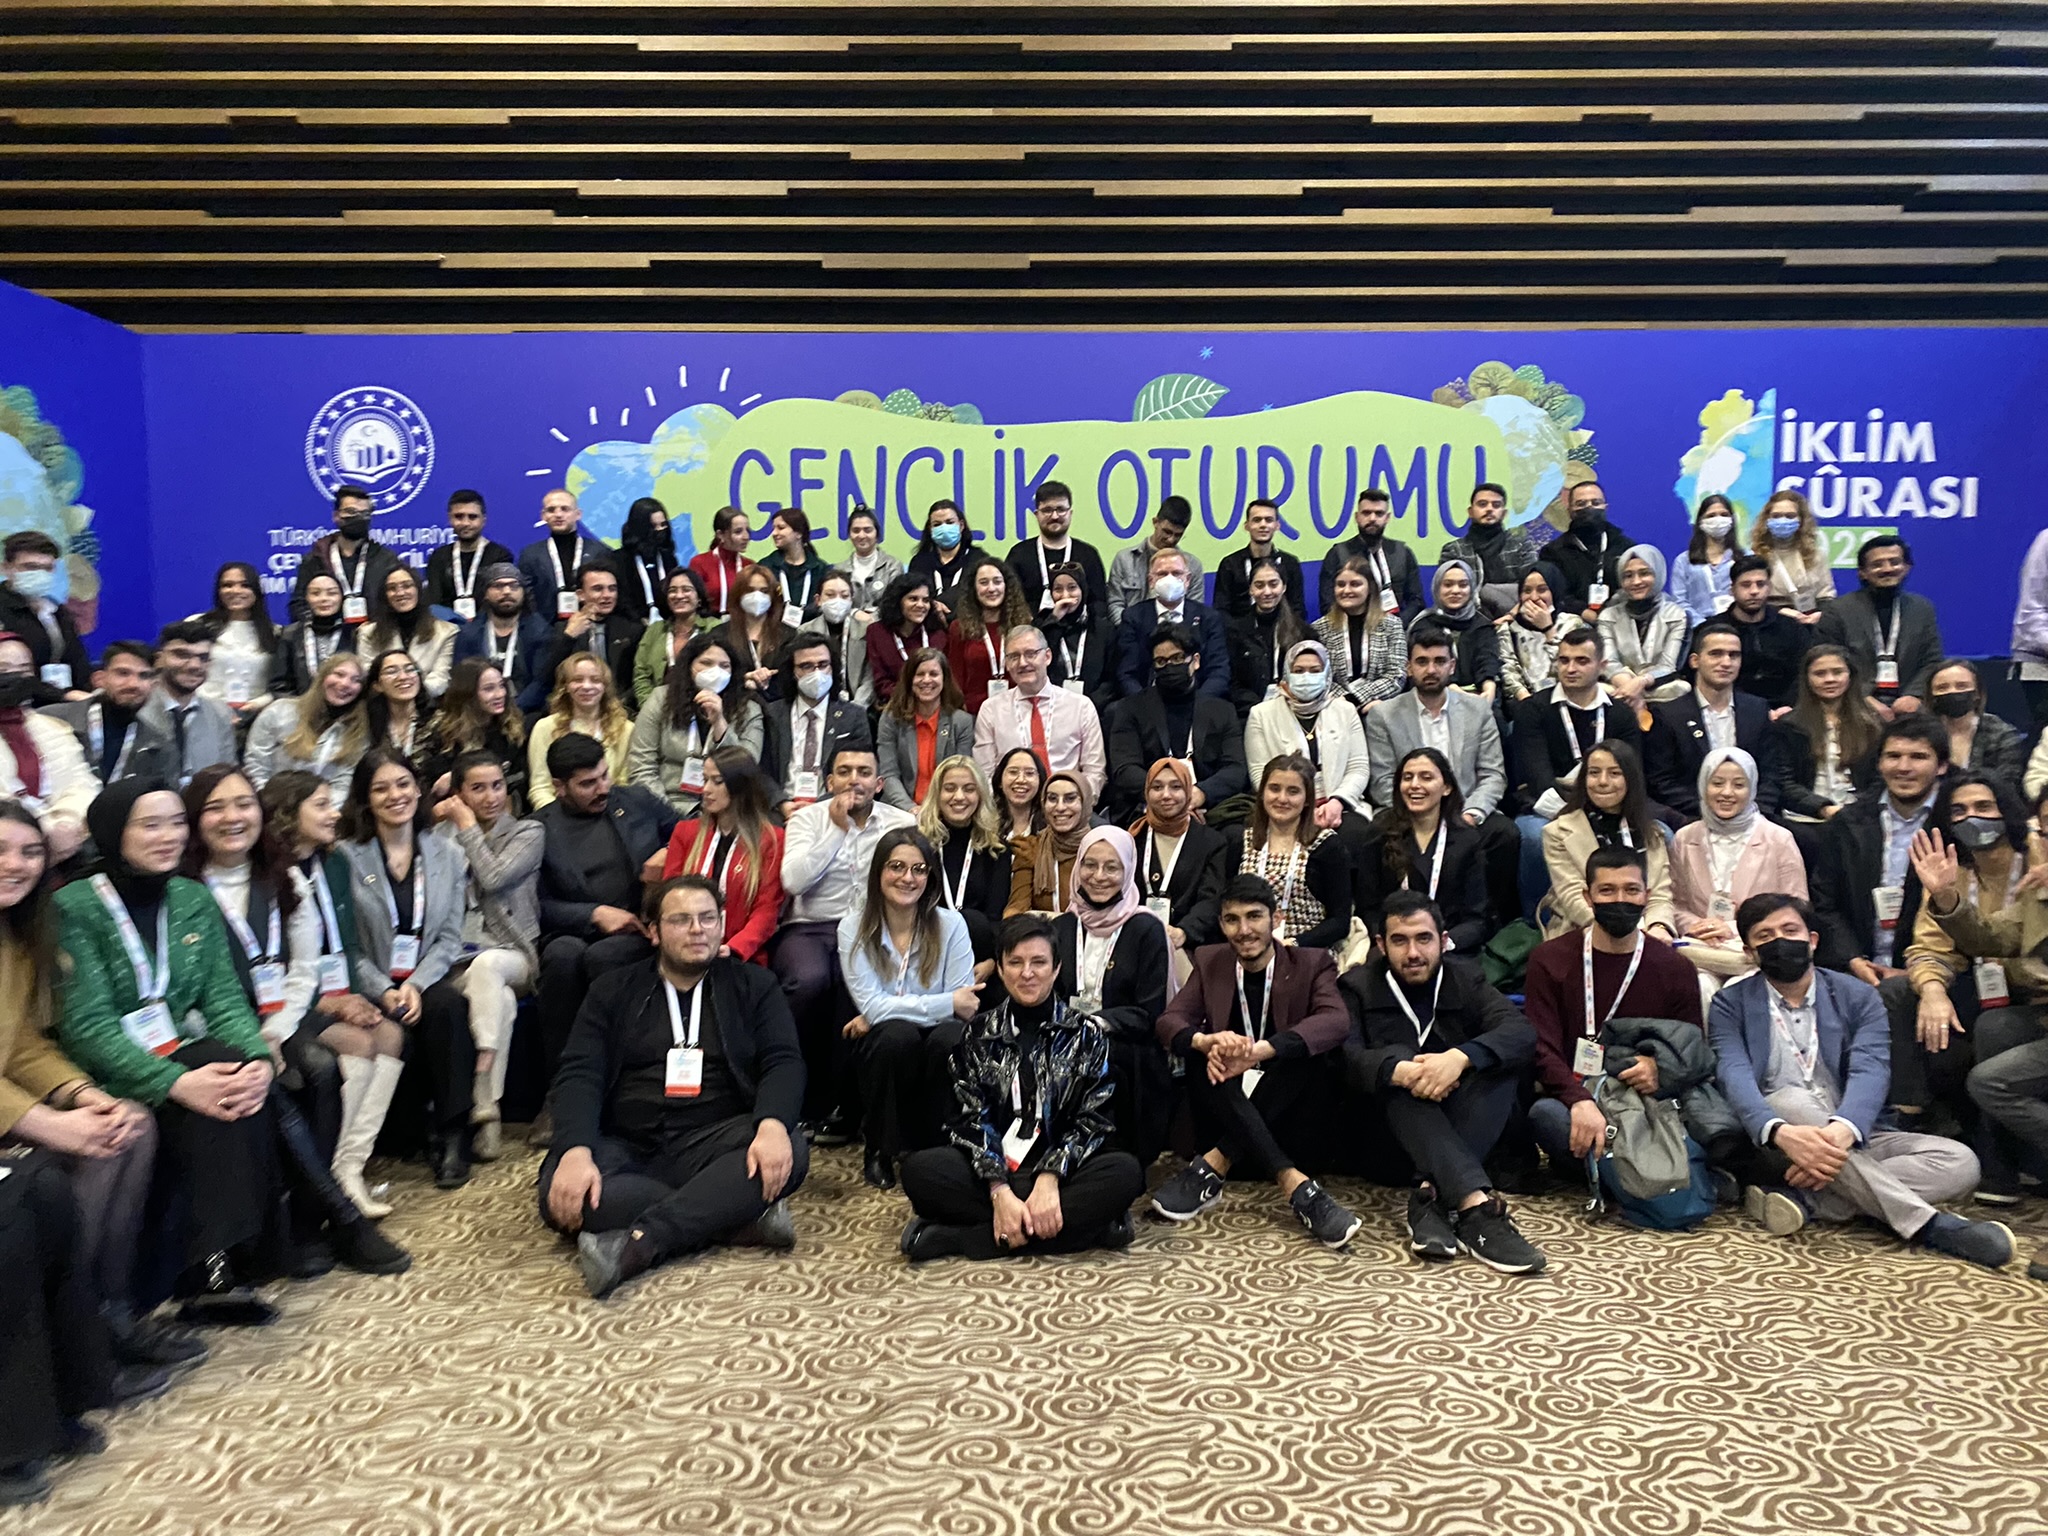 Türkiye’nin İklim Elçisi gençler iklim değişikliği ile mücadelenin önsaflarında yer alıyor